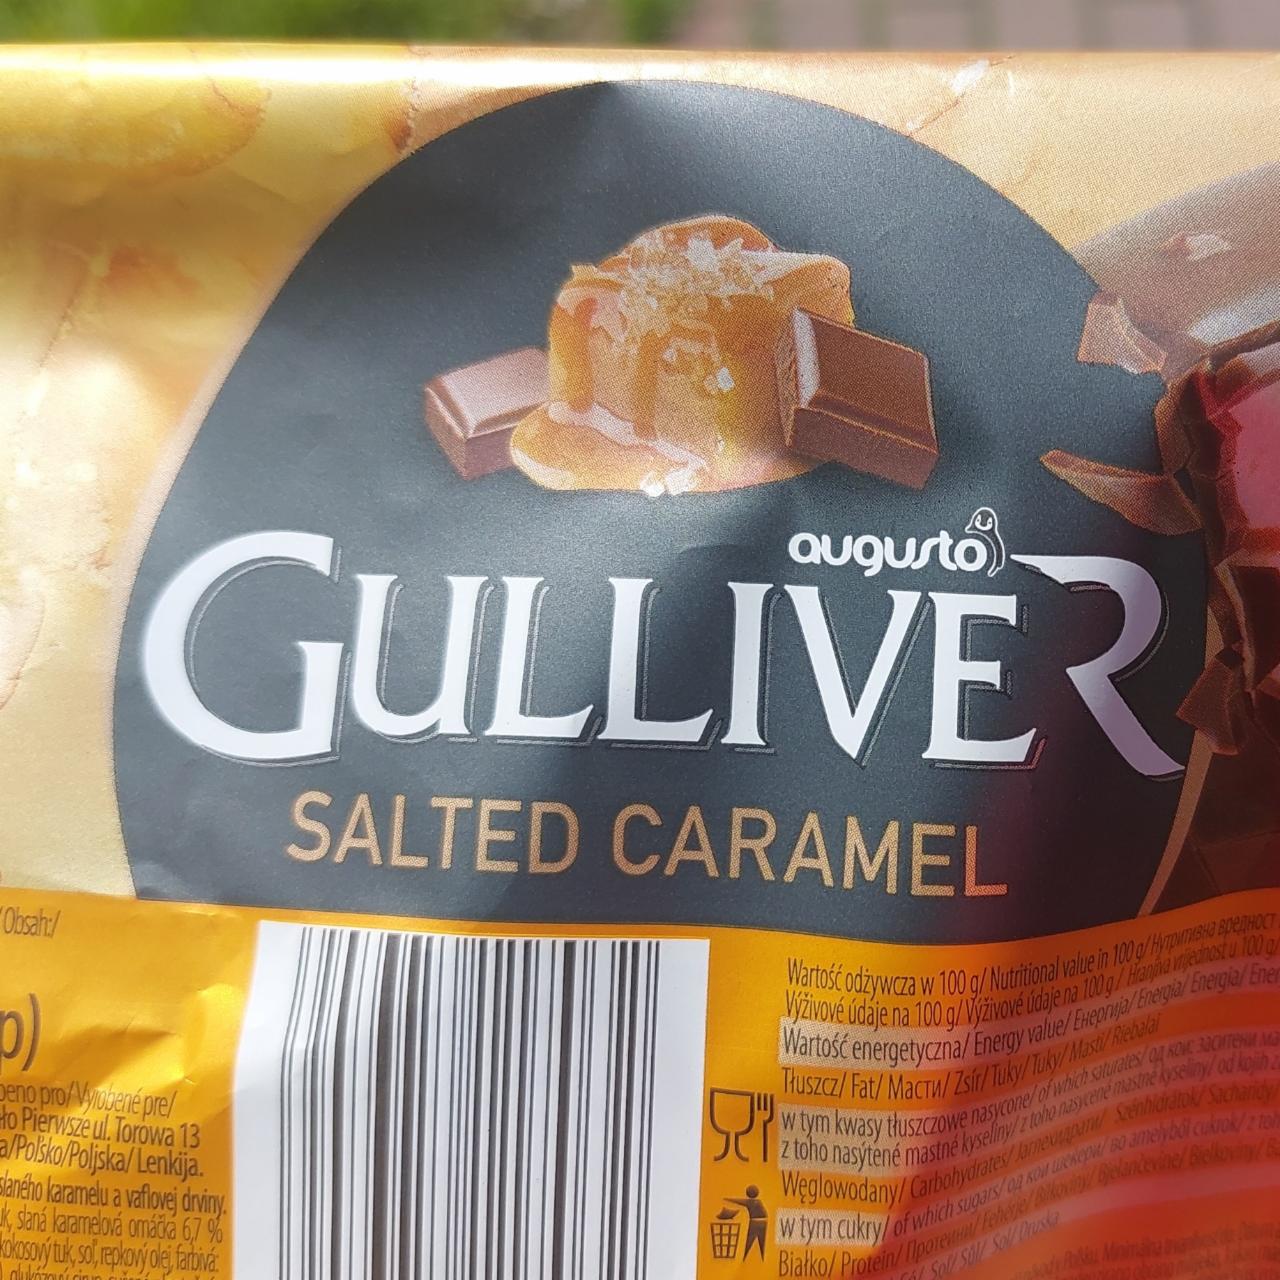 Fotografie - Gulliver salted caramel